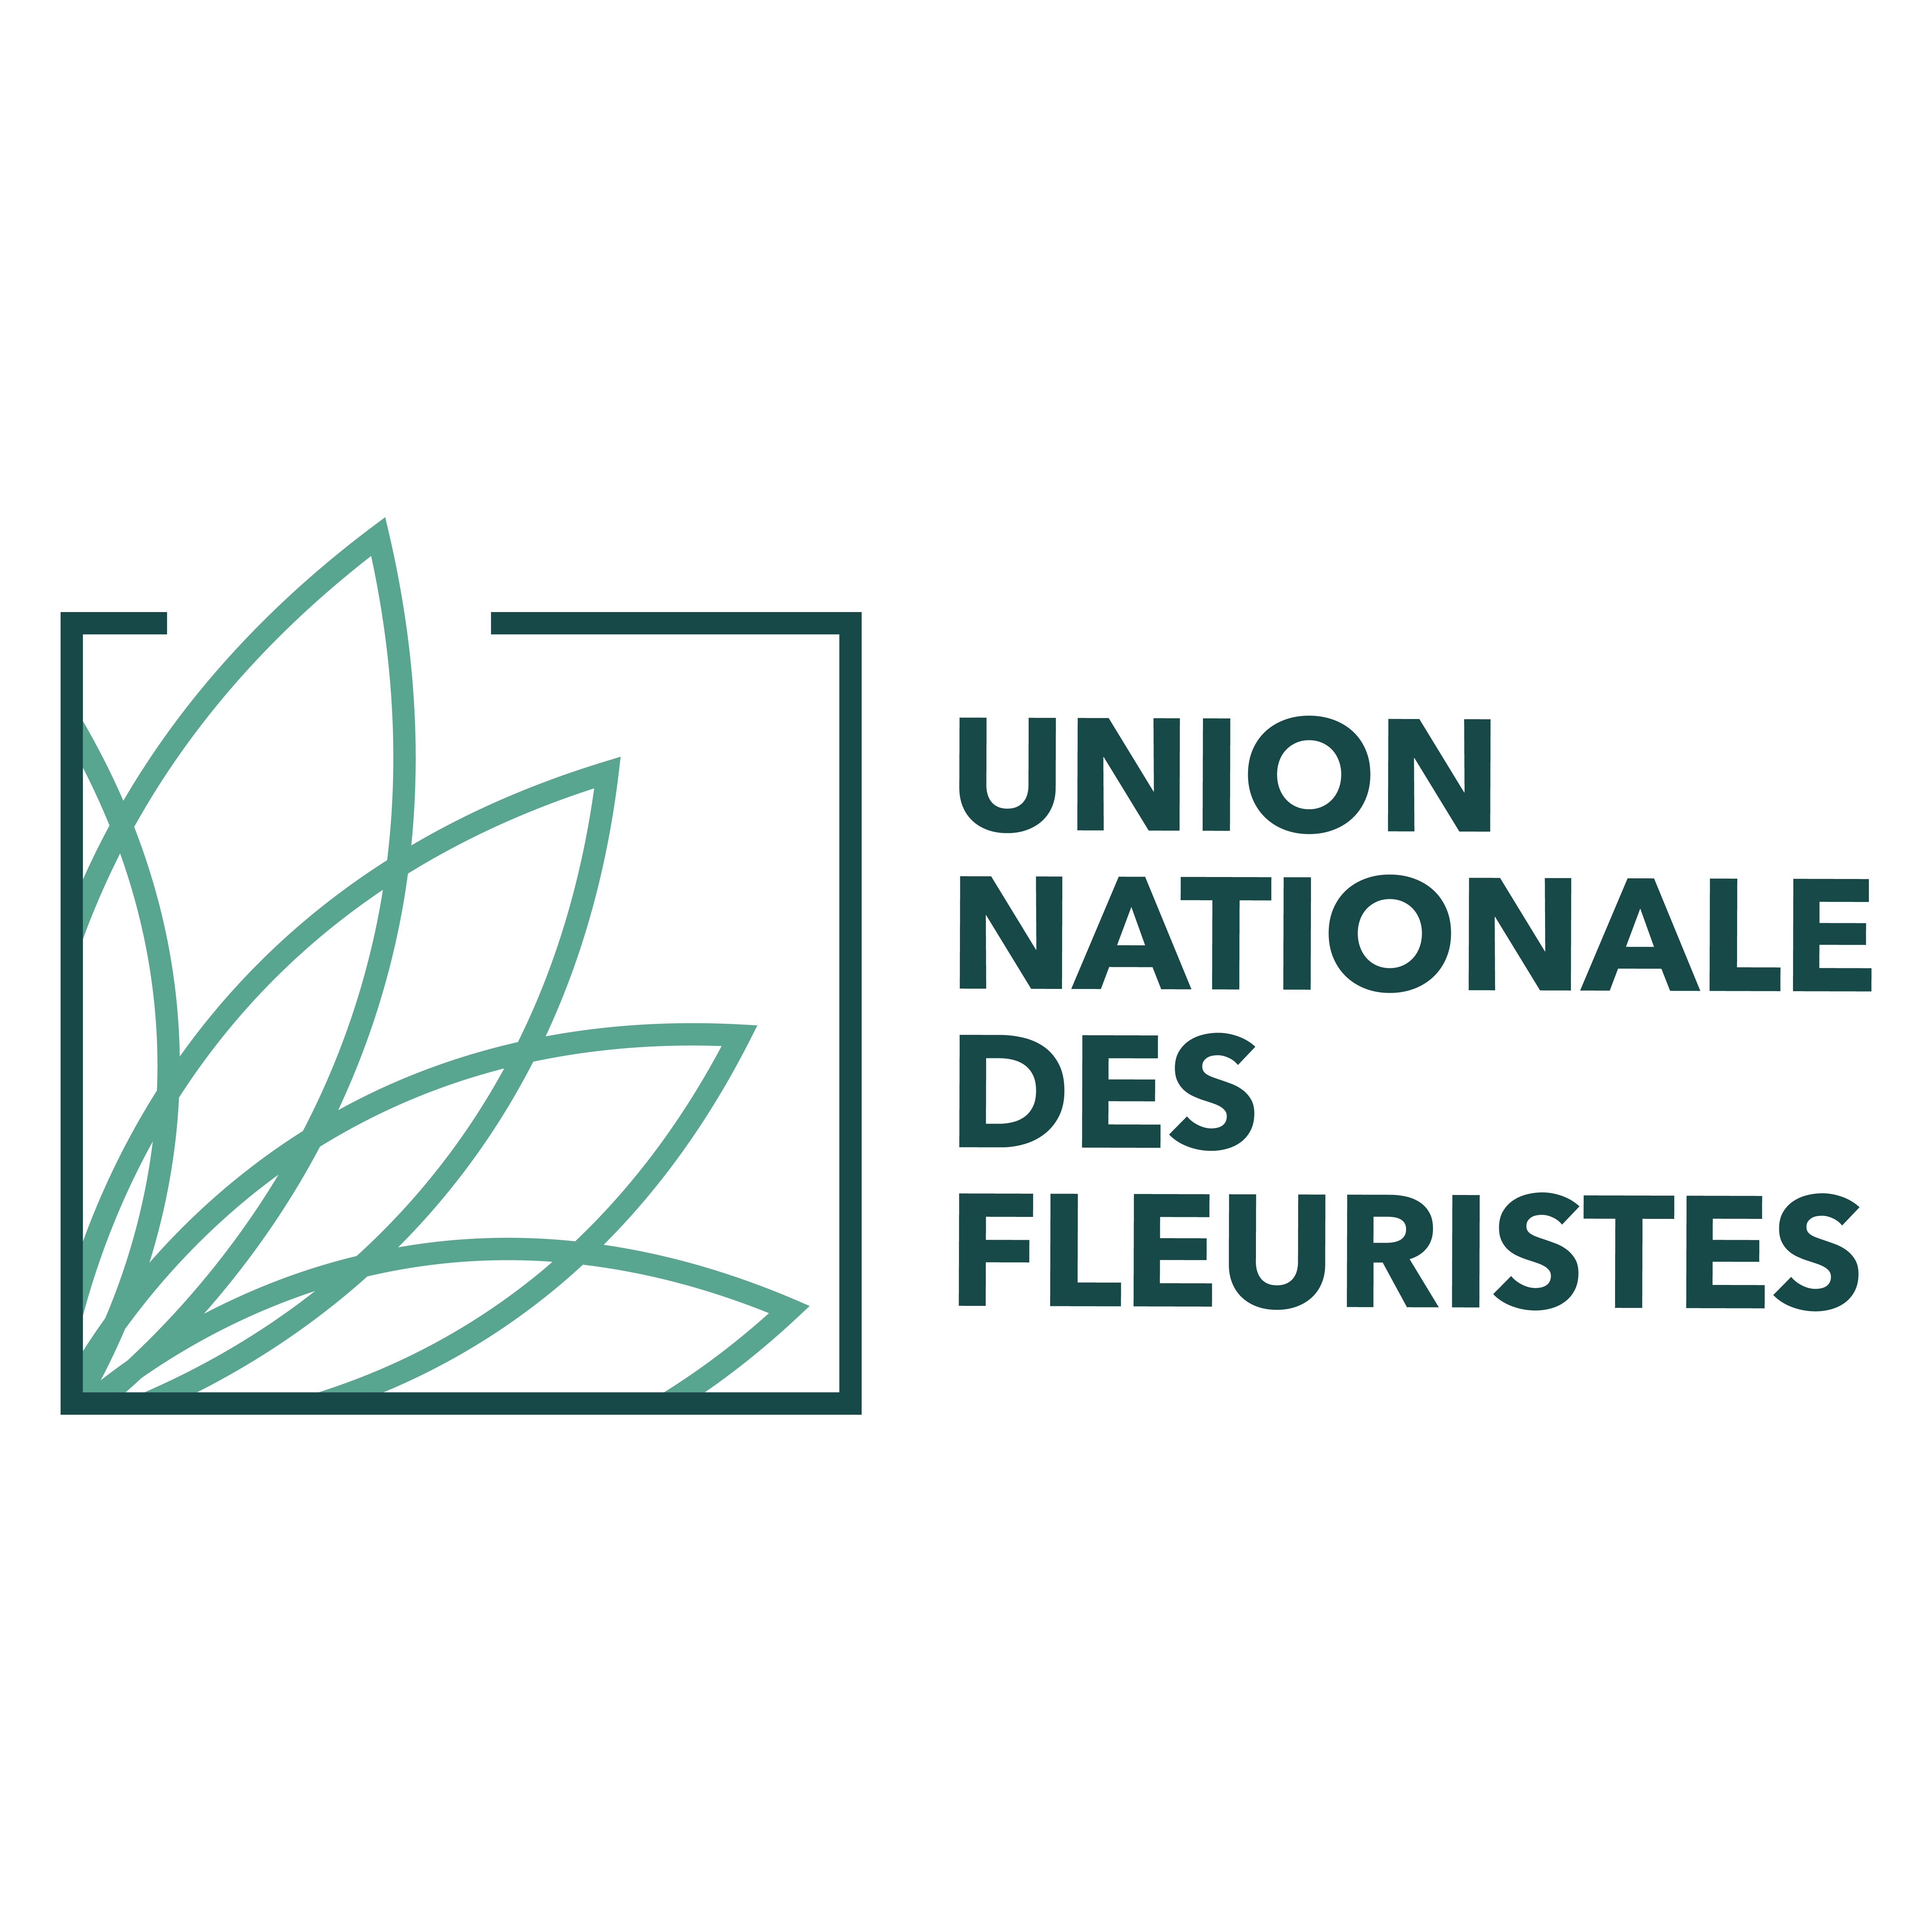 Union nationale des fleuristes